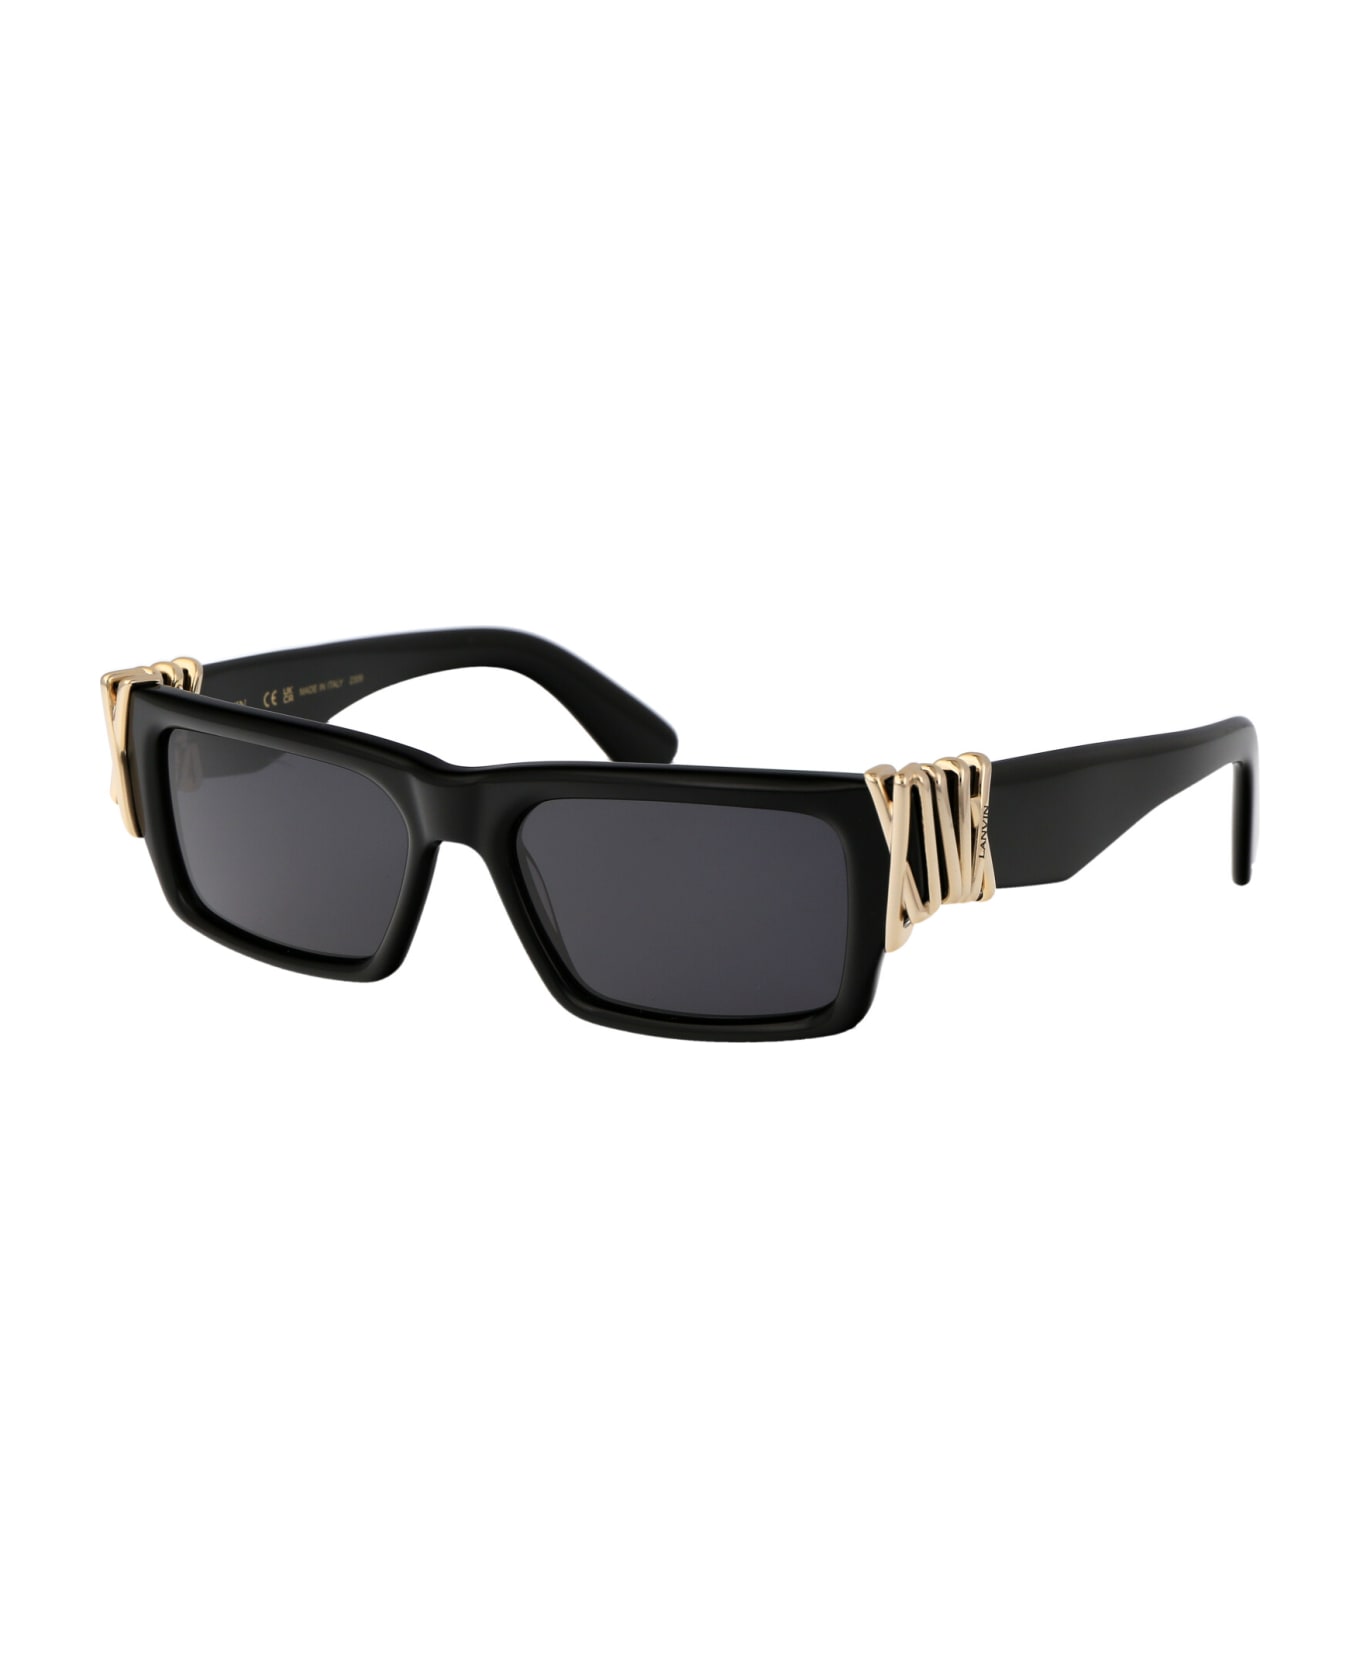 Lanvin Lnv665s Sunglasses - 001 BLACK